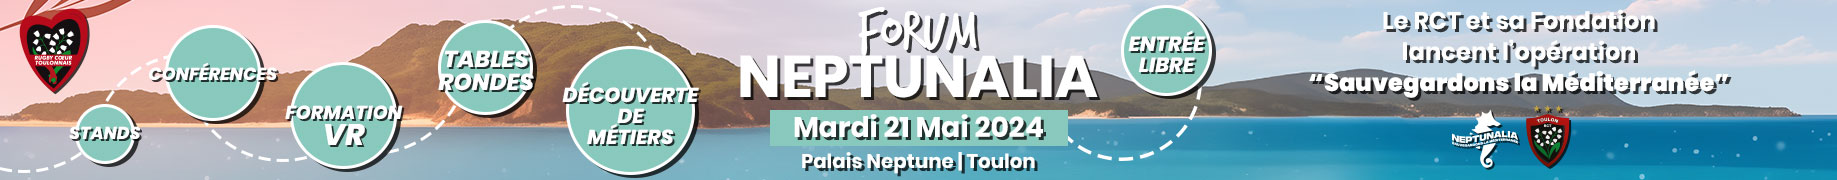 Forum Neptunalia - Le RCT et sa Fondation lancent l'opération "Sauvegardons la Méditerranée"